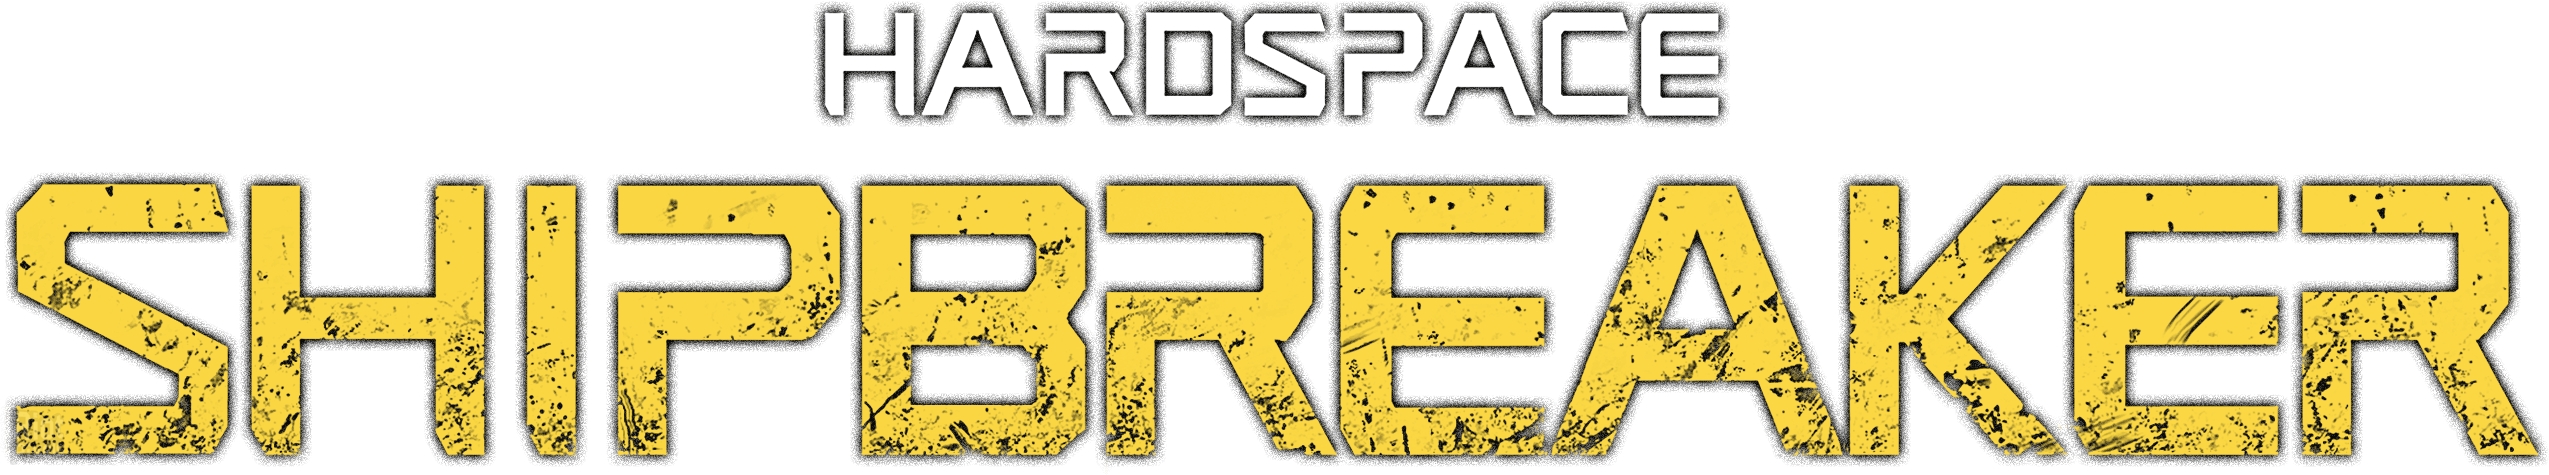 Hardspace: Shipbreaker artworks at Riot Pixels